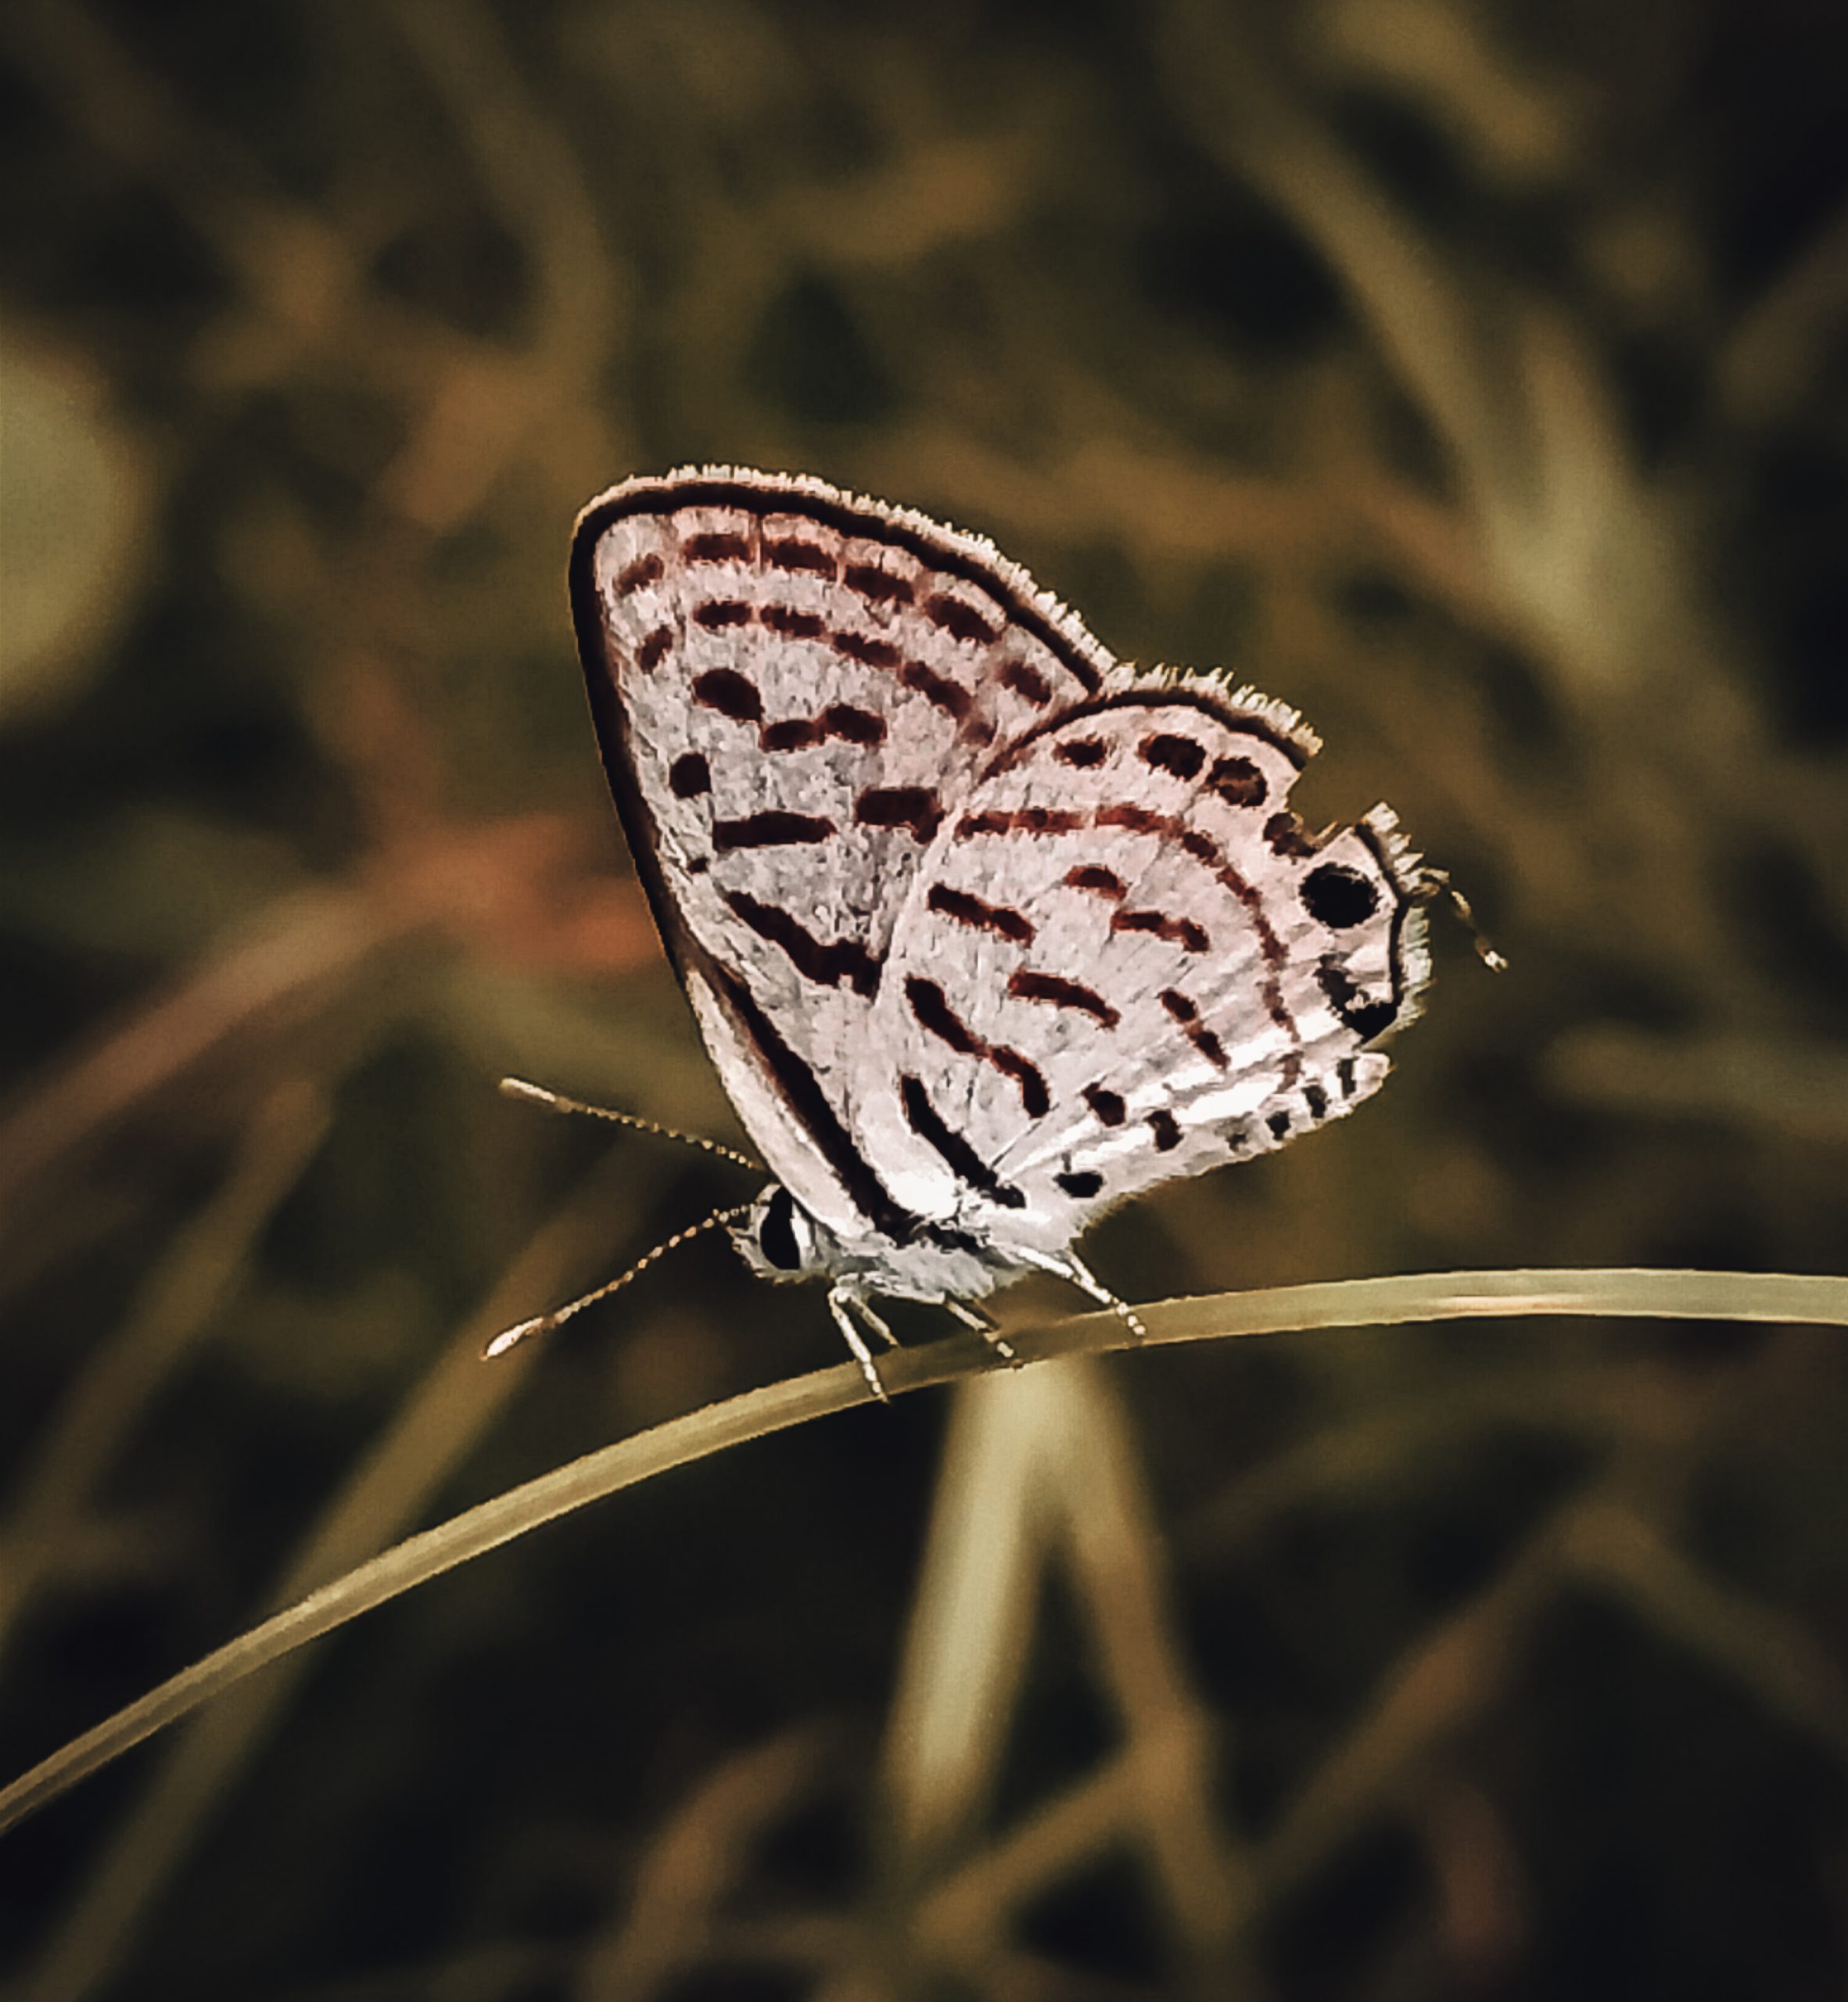 A Melanargia butterfly.